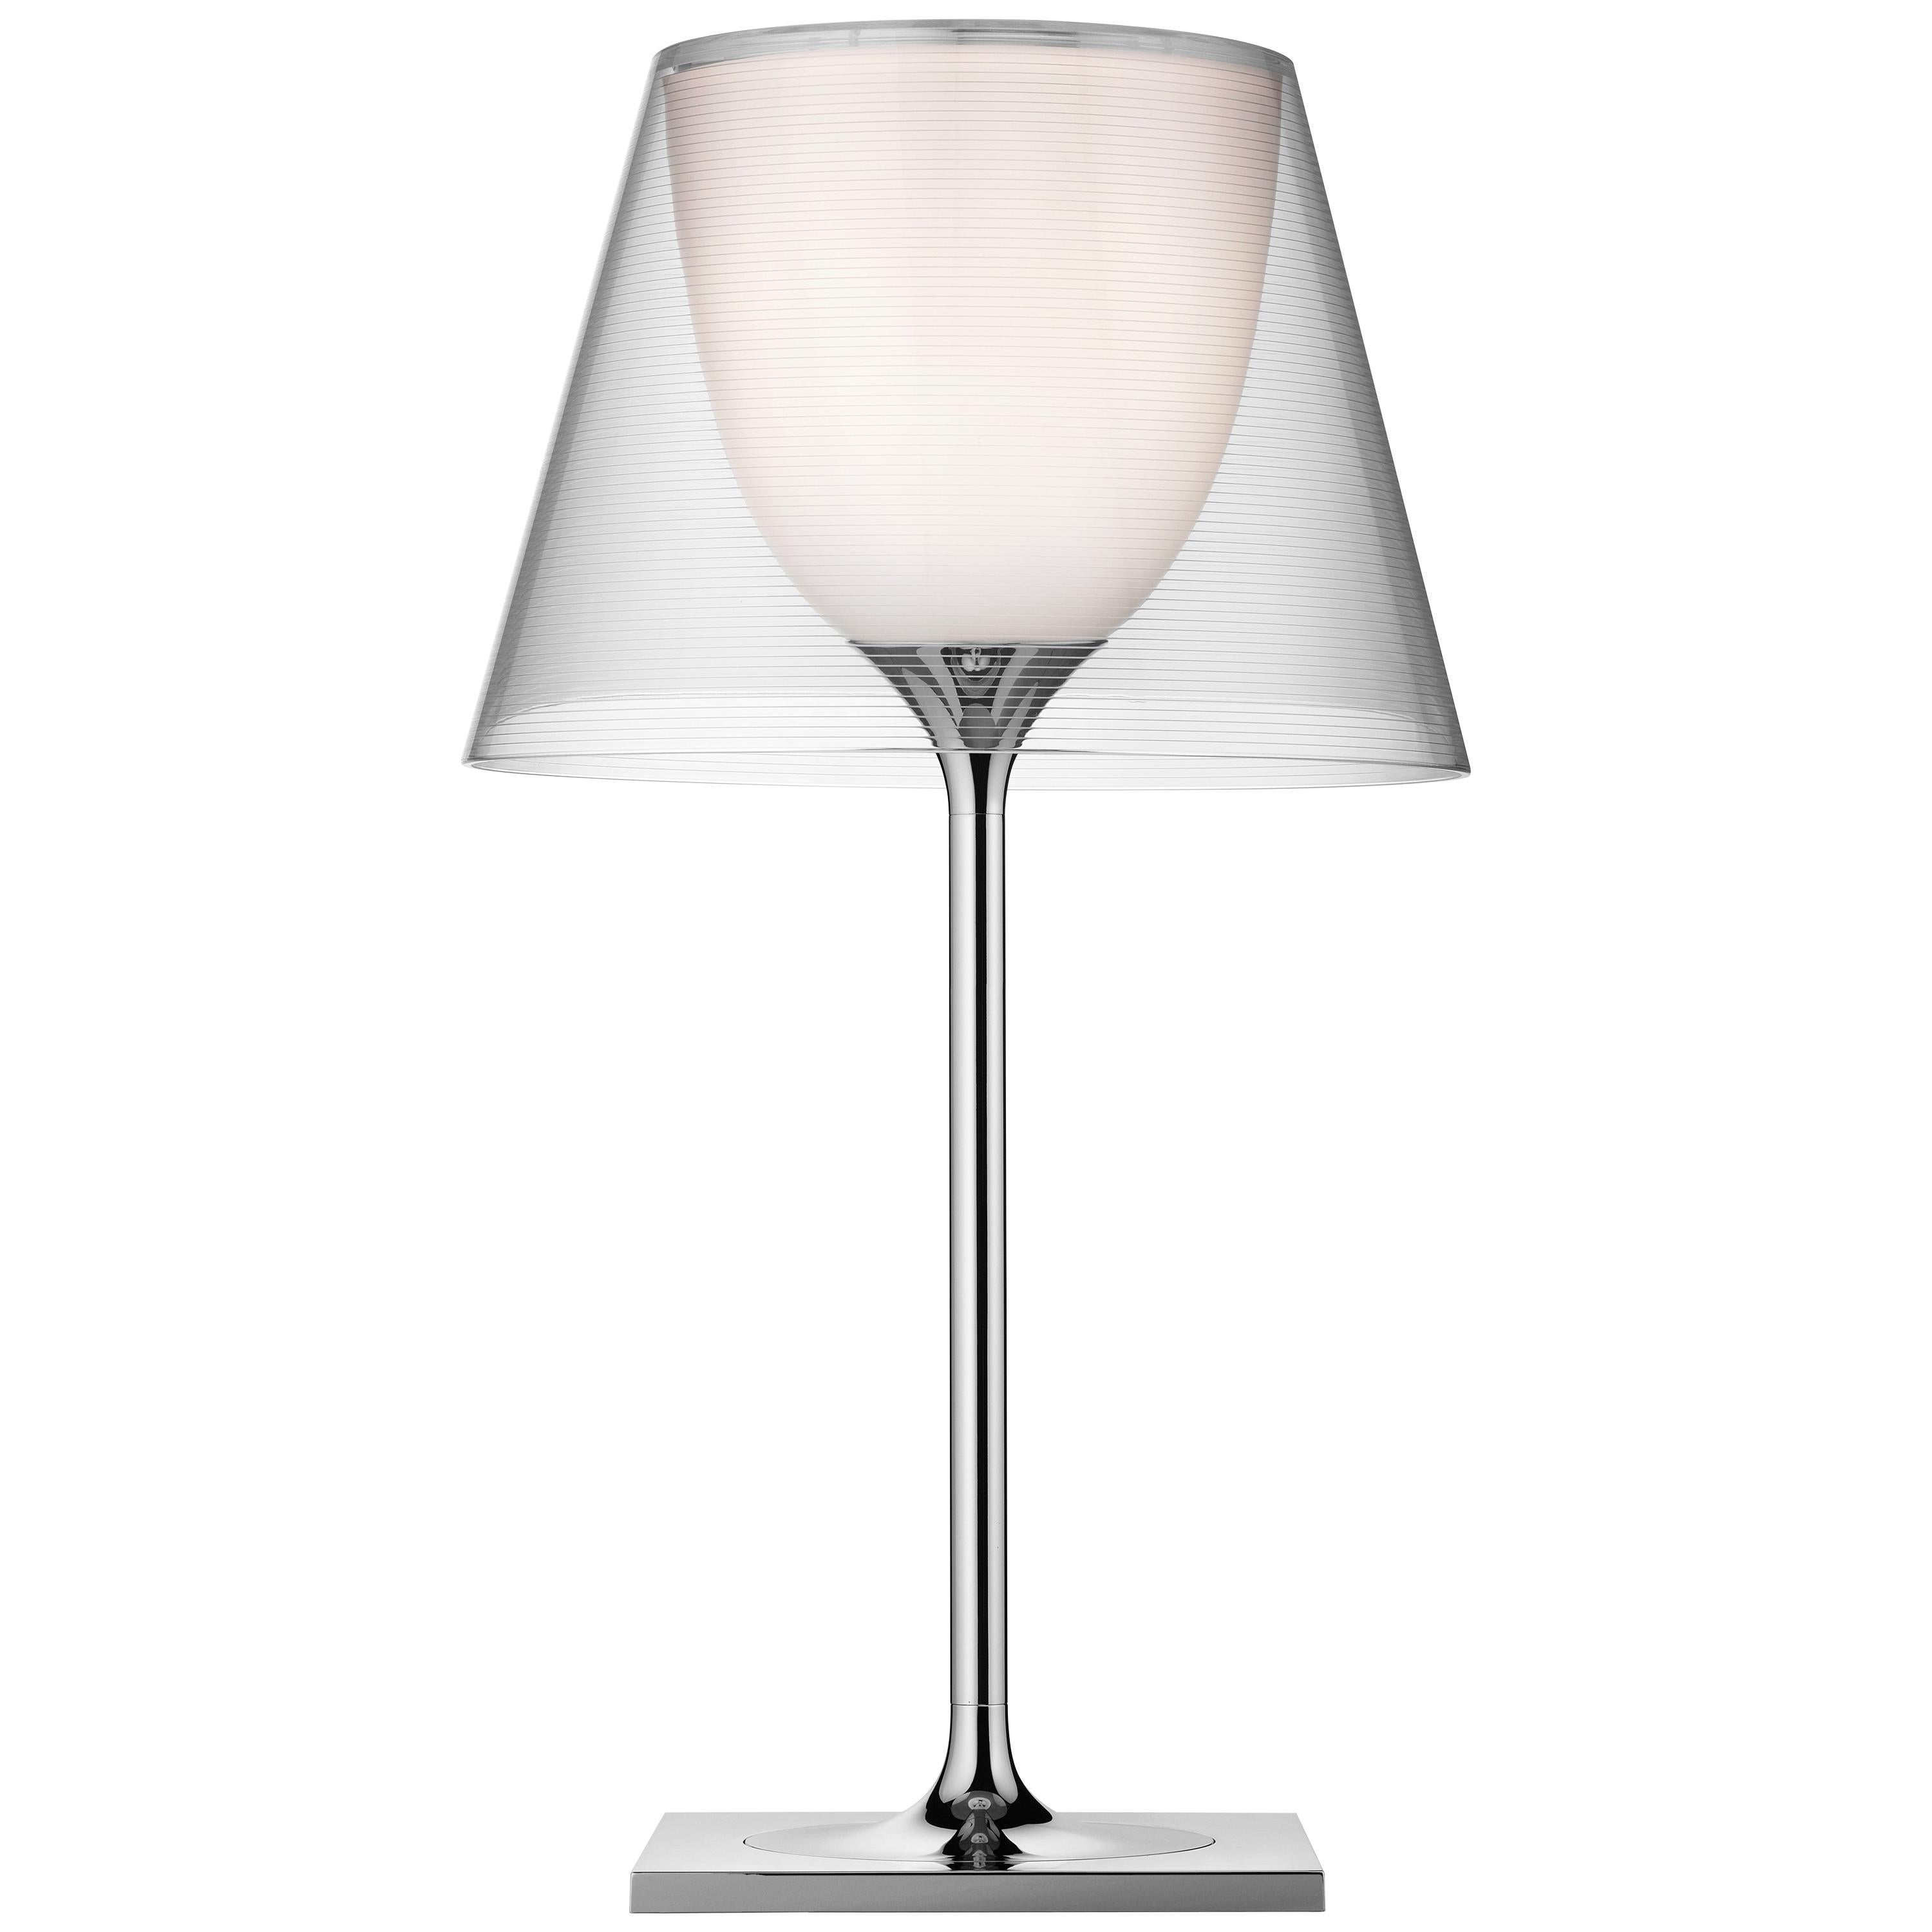 FLOS Ktribe T1 Tischlampe in Chrom mit transparentem Diffusor von Philippe Starck